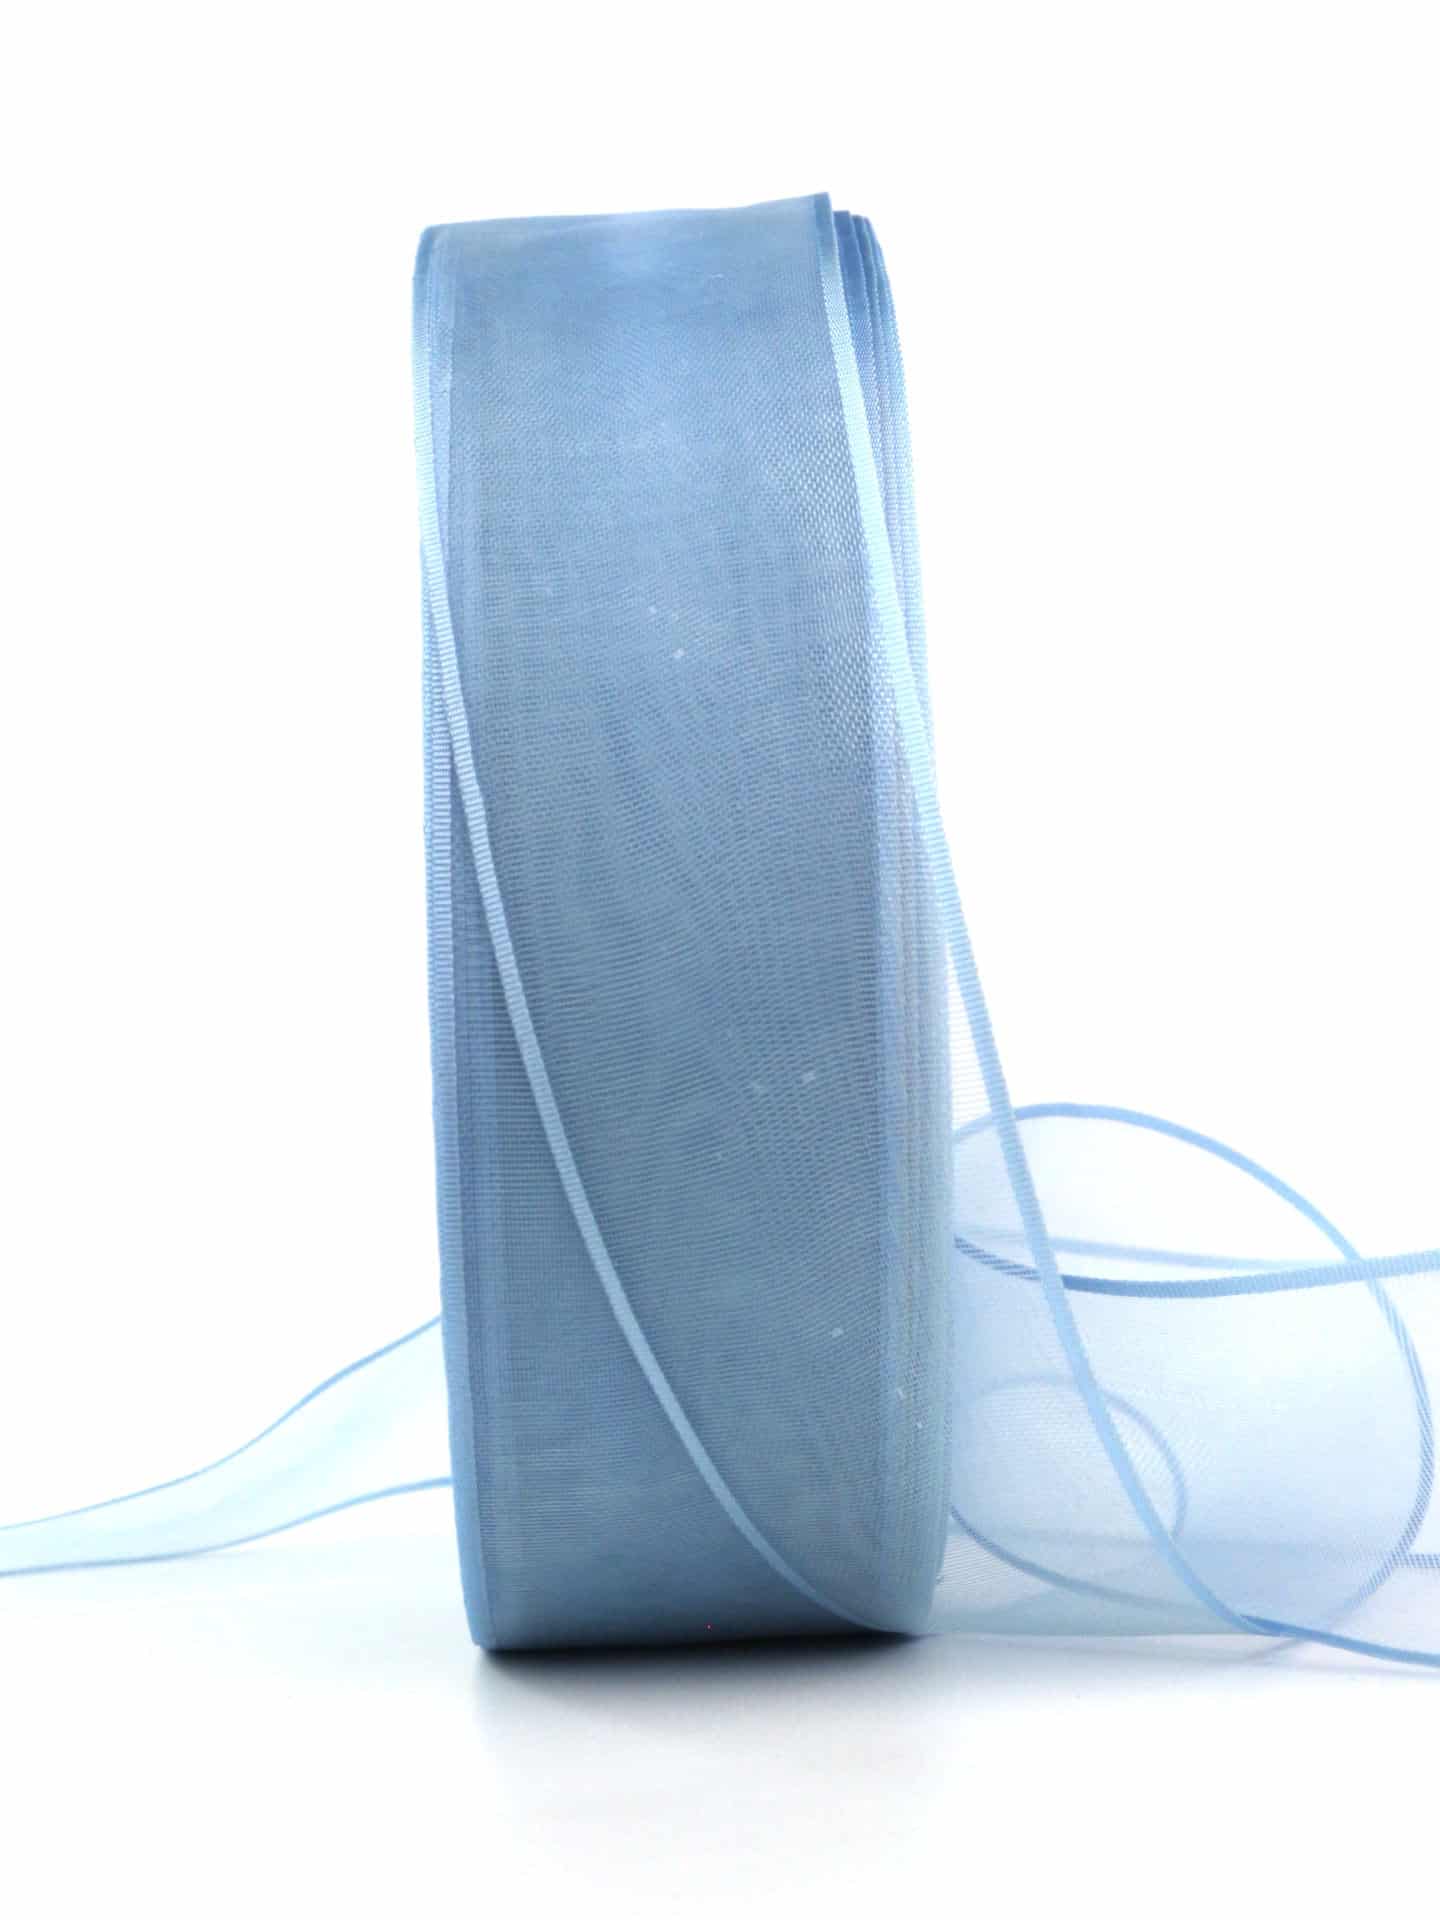 Organzaband mit Webkante, hellblau, 40 mm, 100 m Maxi-Rolle - organzabaender, organzaband-einfarbig, sonderangebot